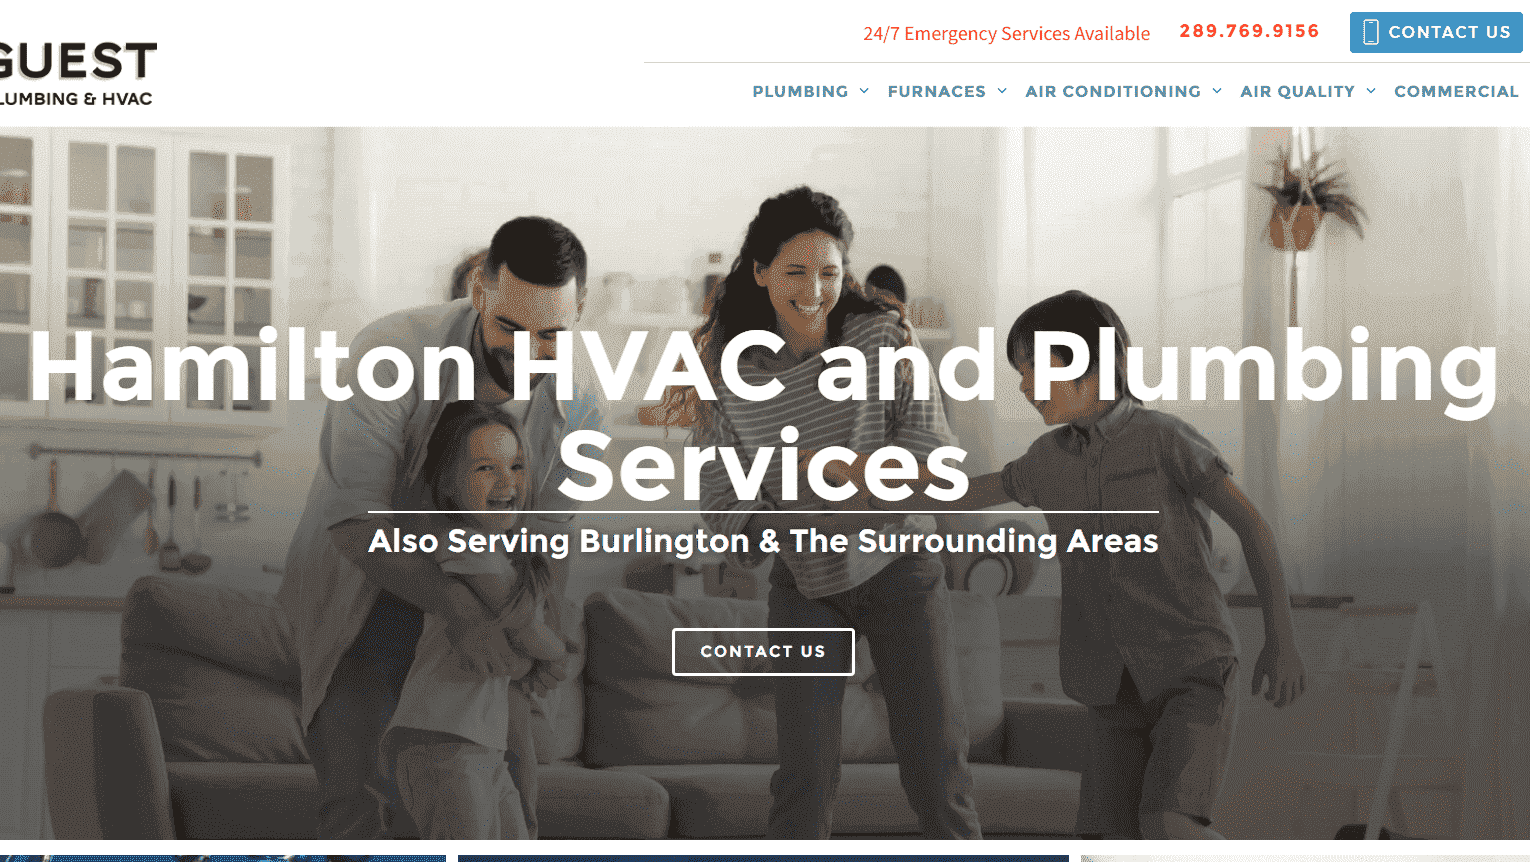 Guest-Plumbing-HVAC-HubSpot-Screenshot